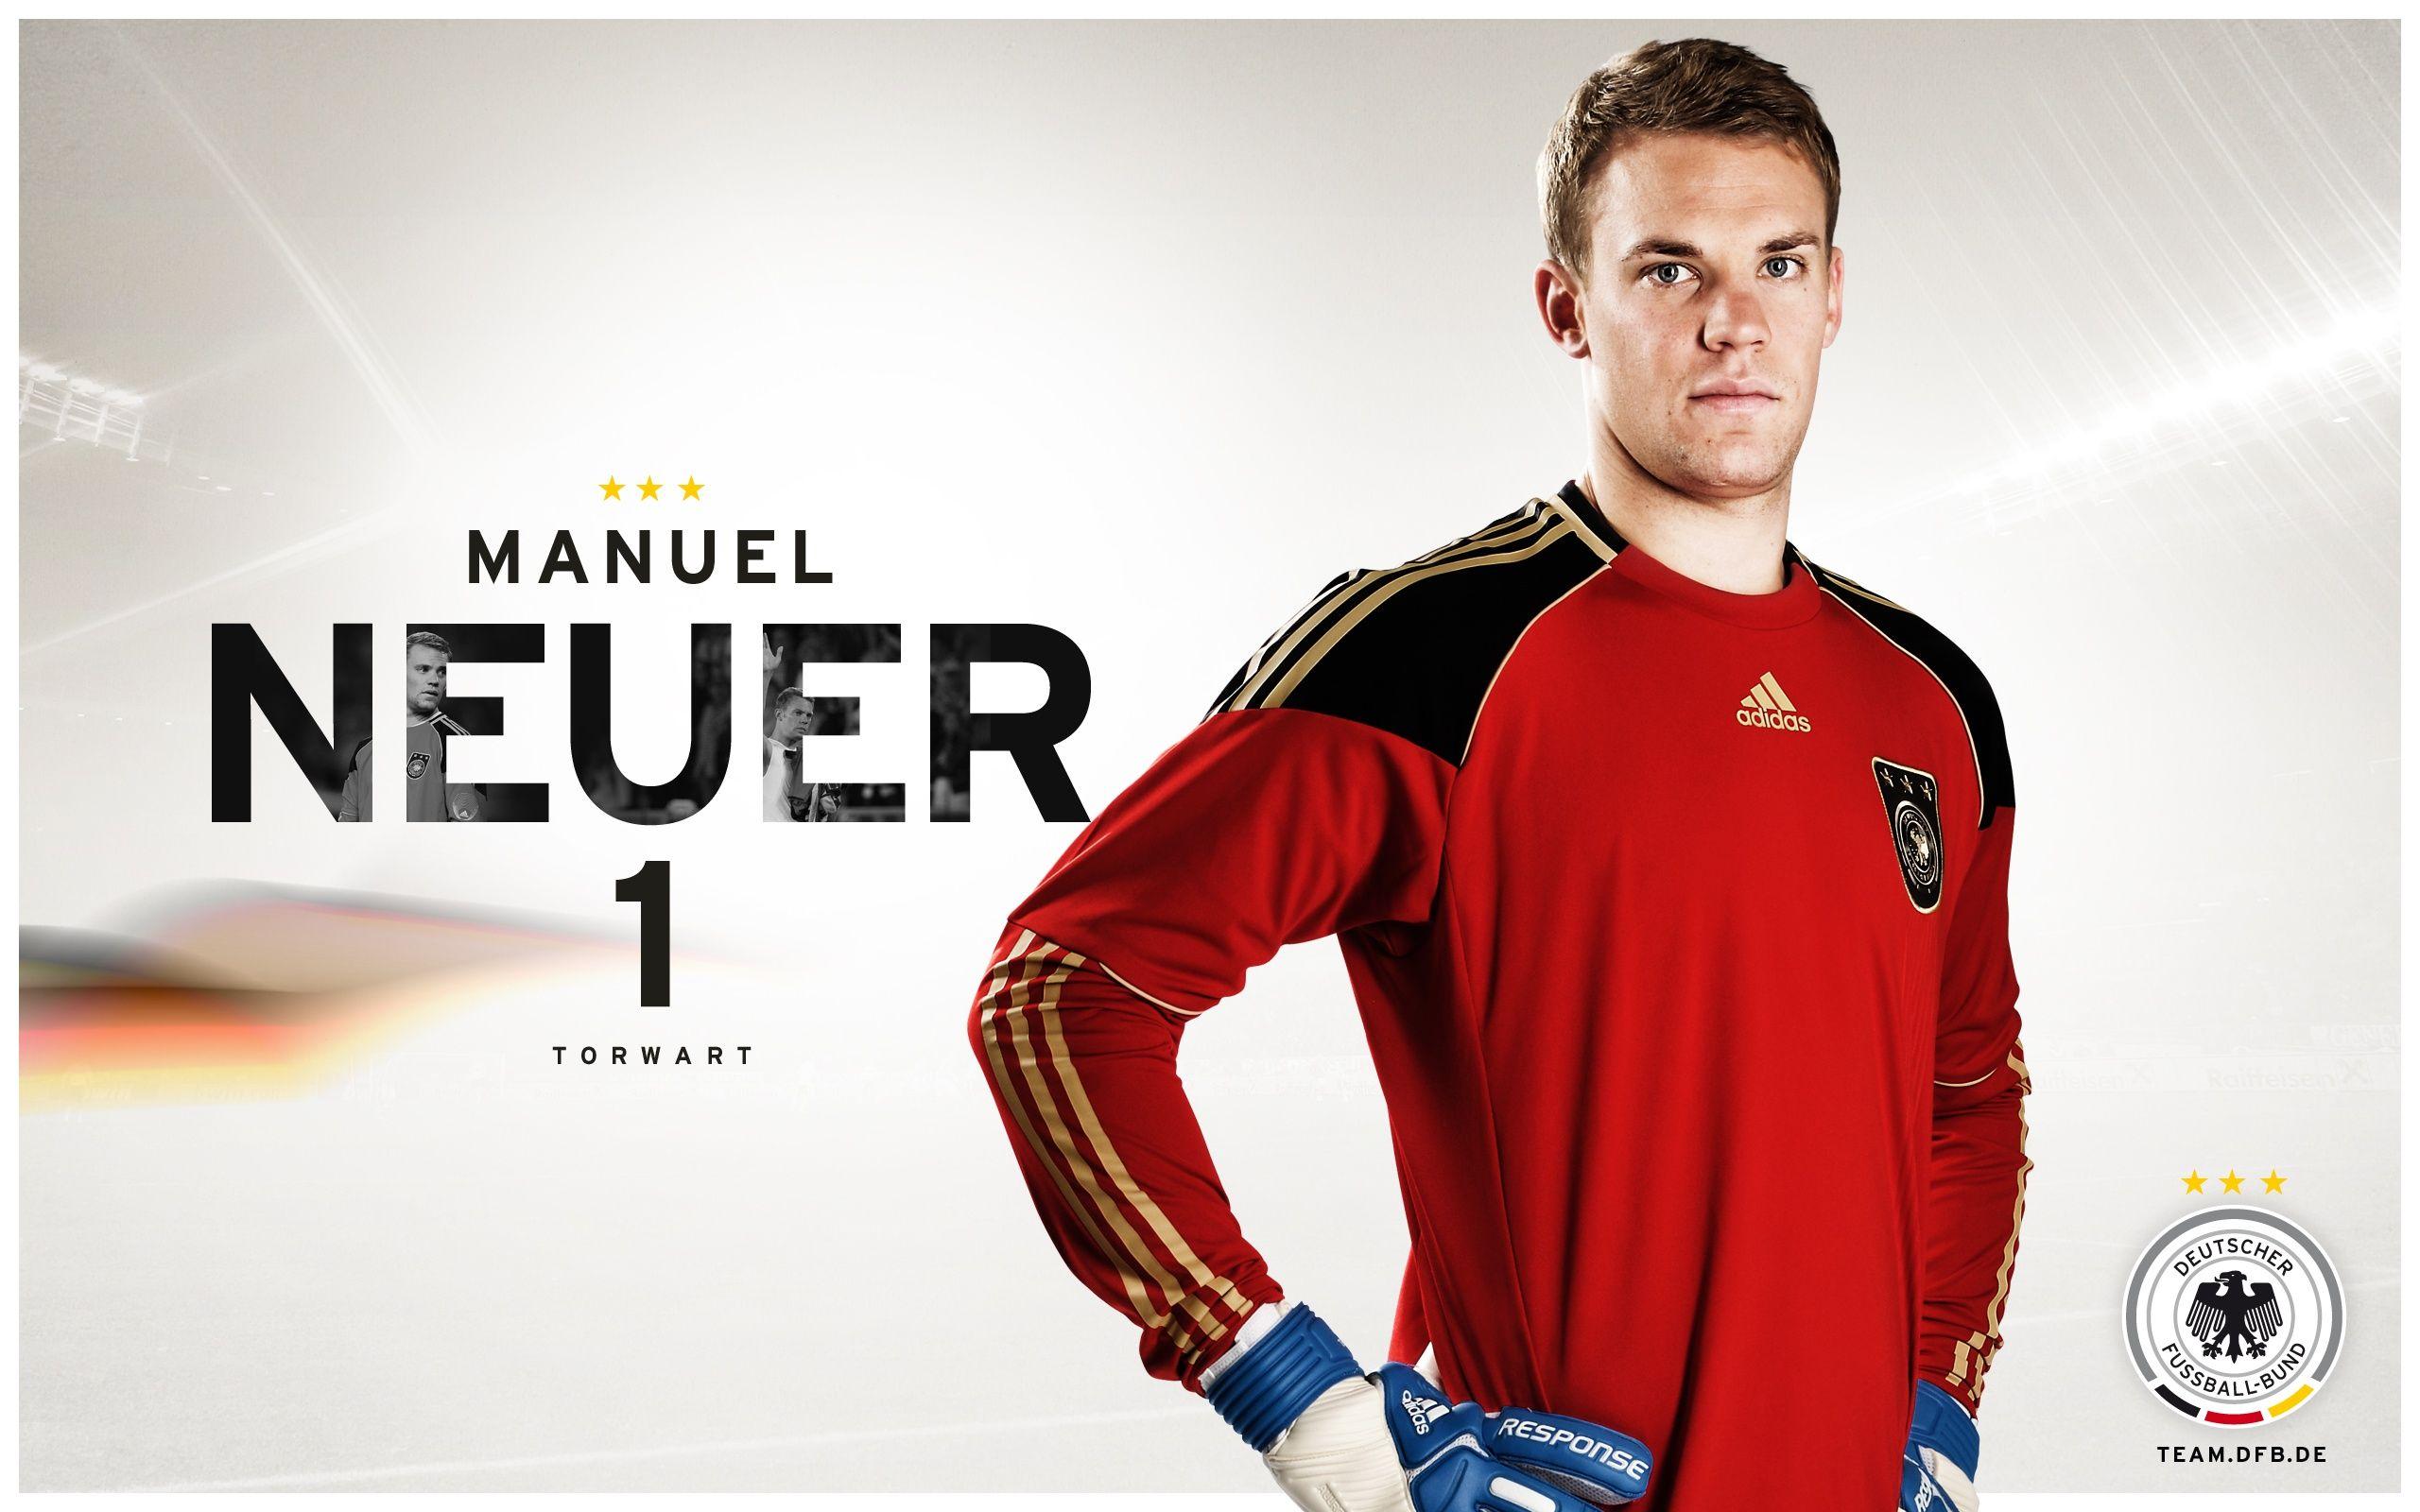 Manuel Neuer Wallpaper Soccer Desktop Wallpaper. MANUEL